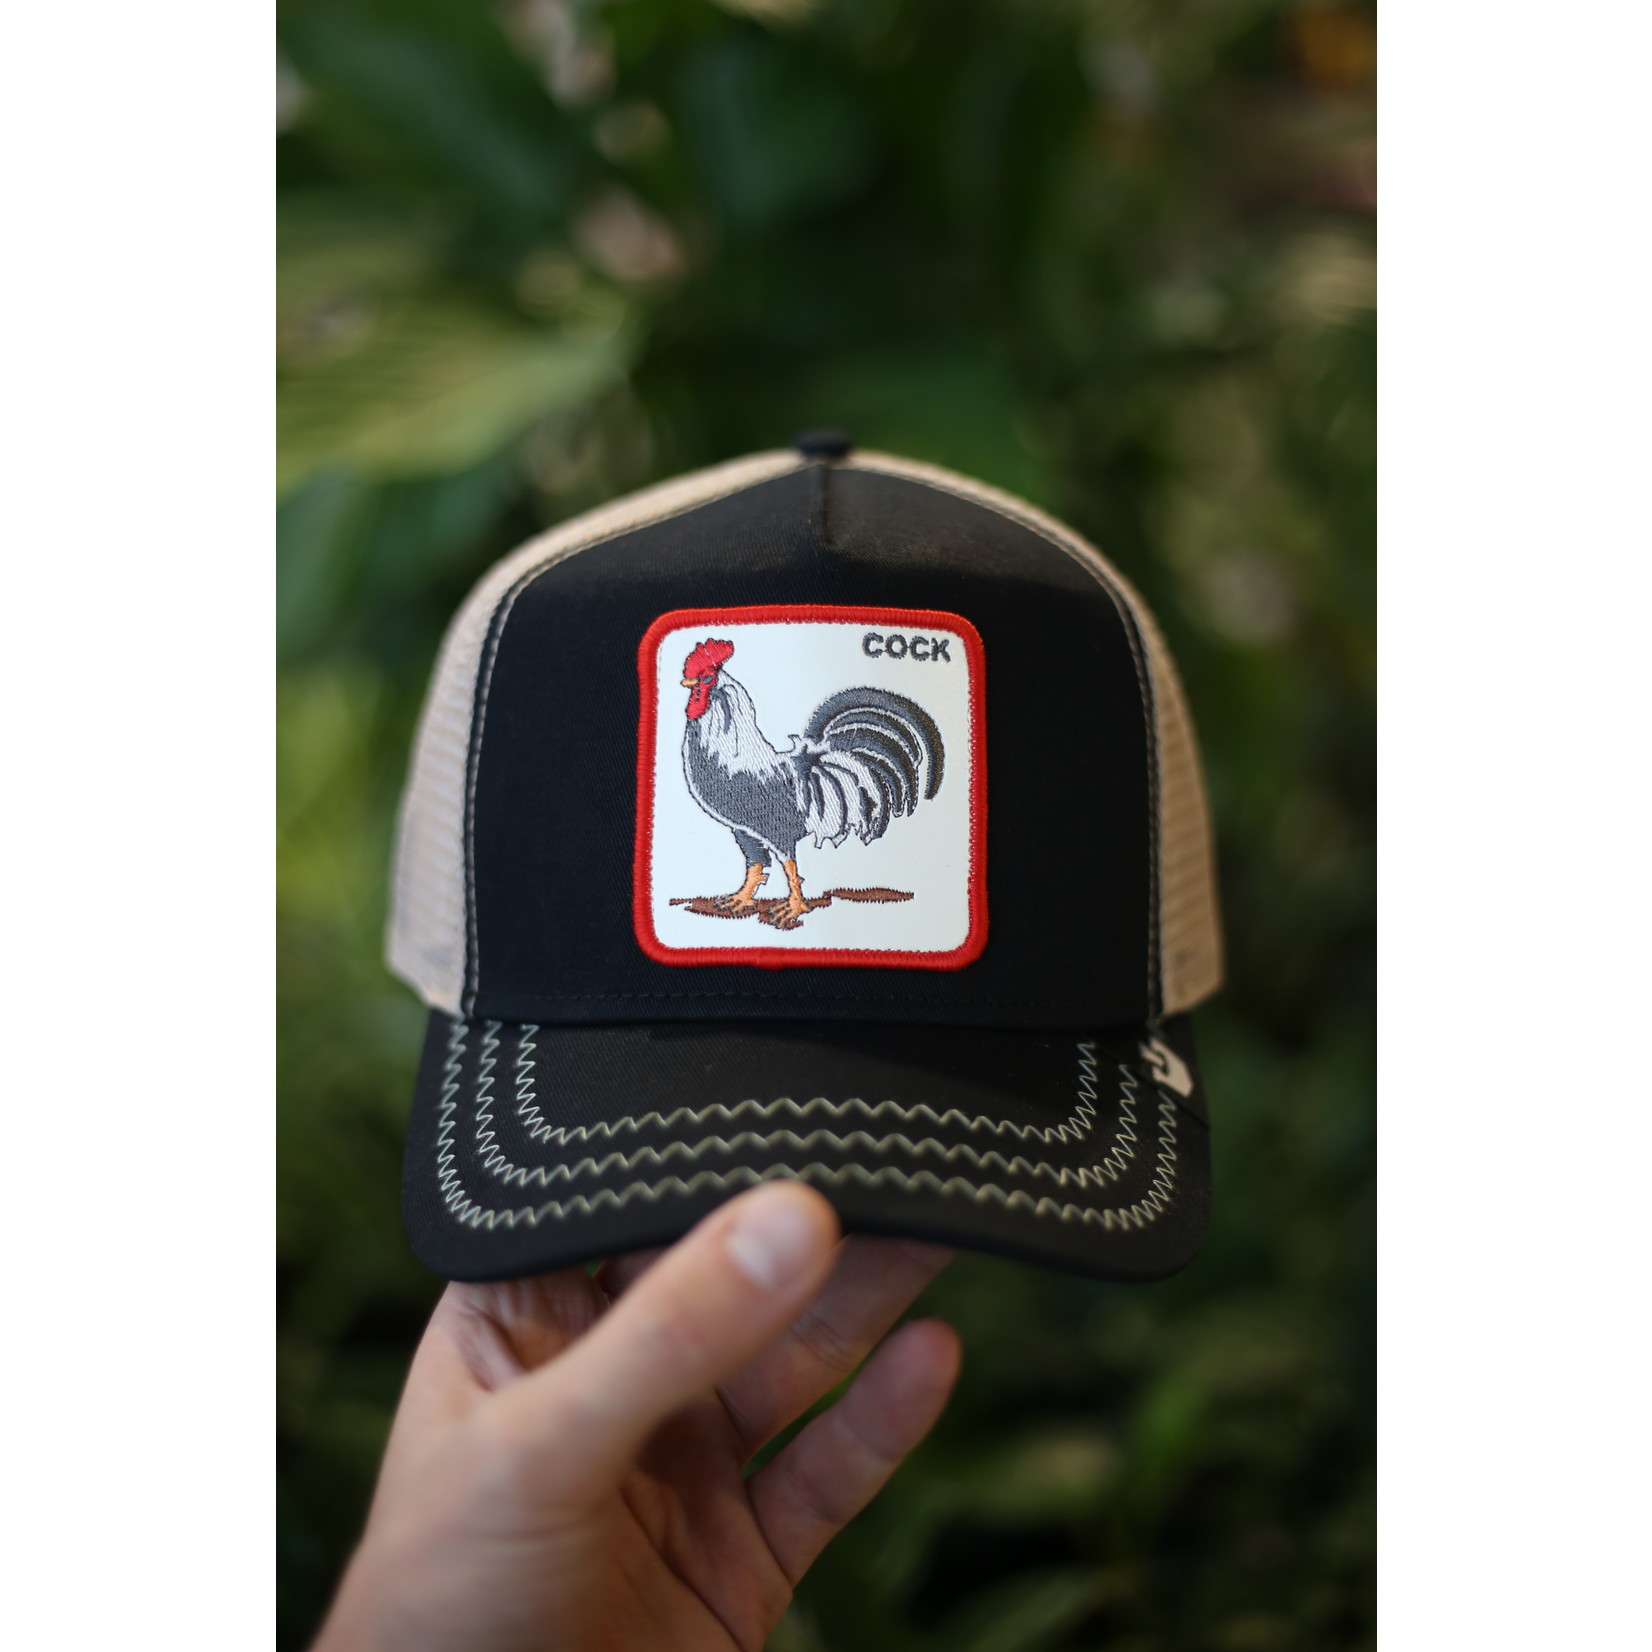 Goorin Bros. The Cock Trucker Hat